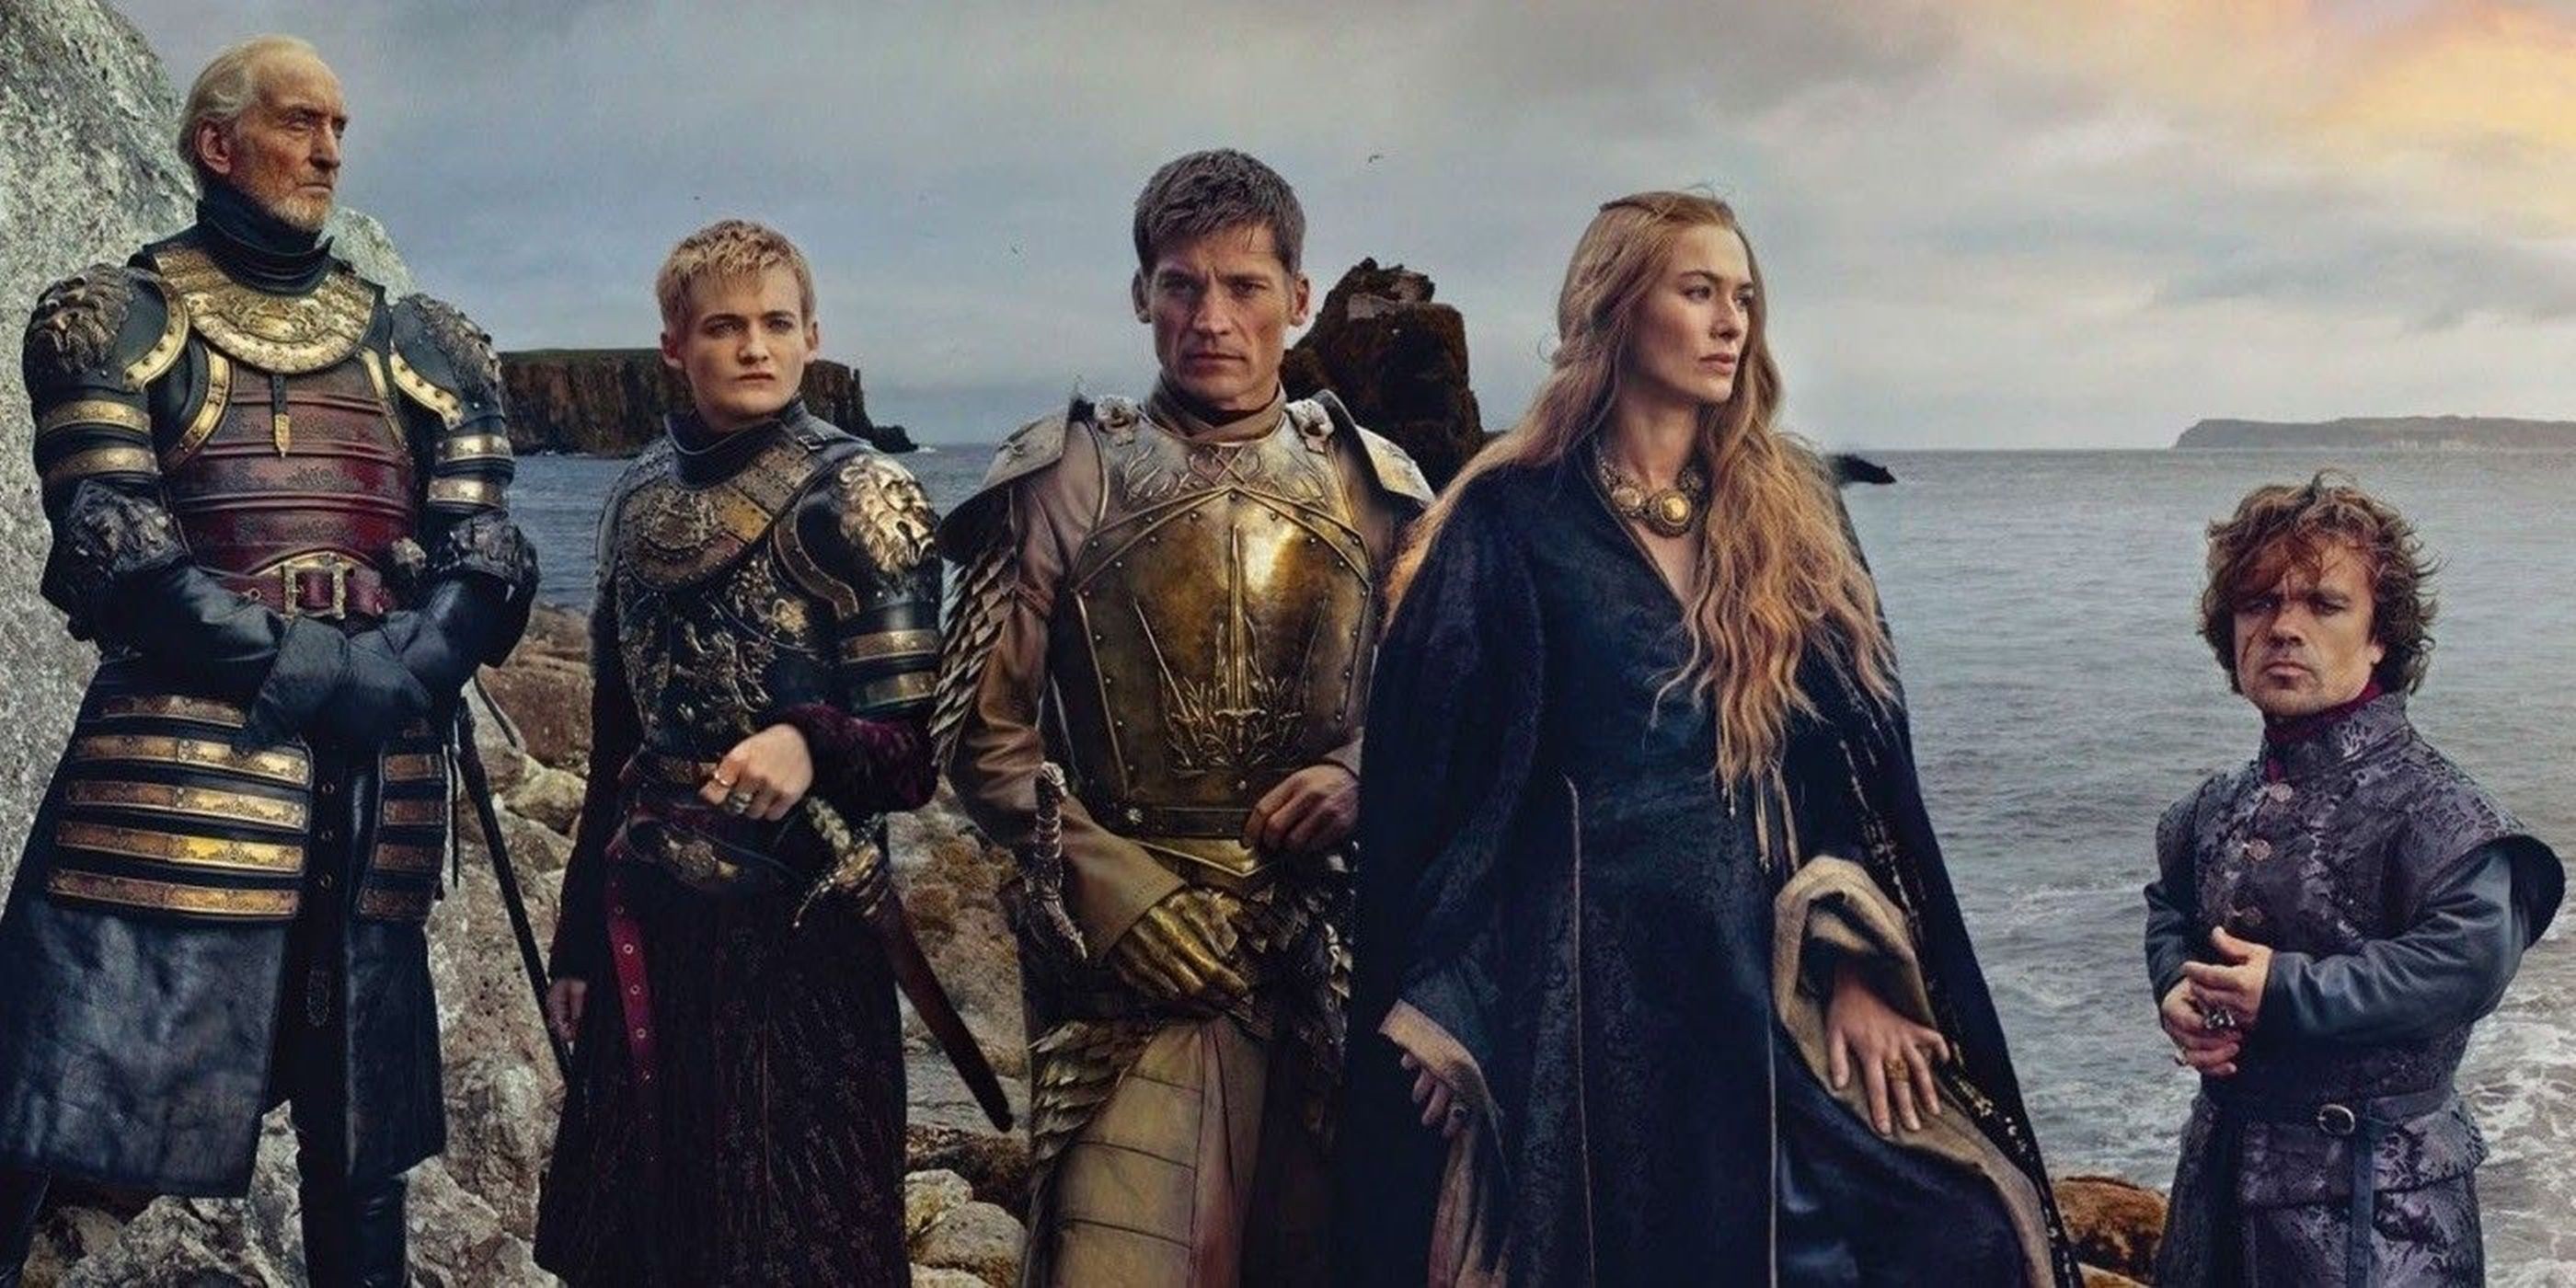 Lannister Familie